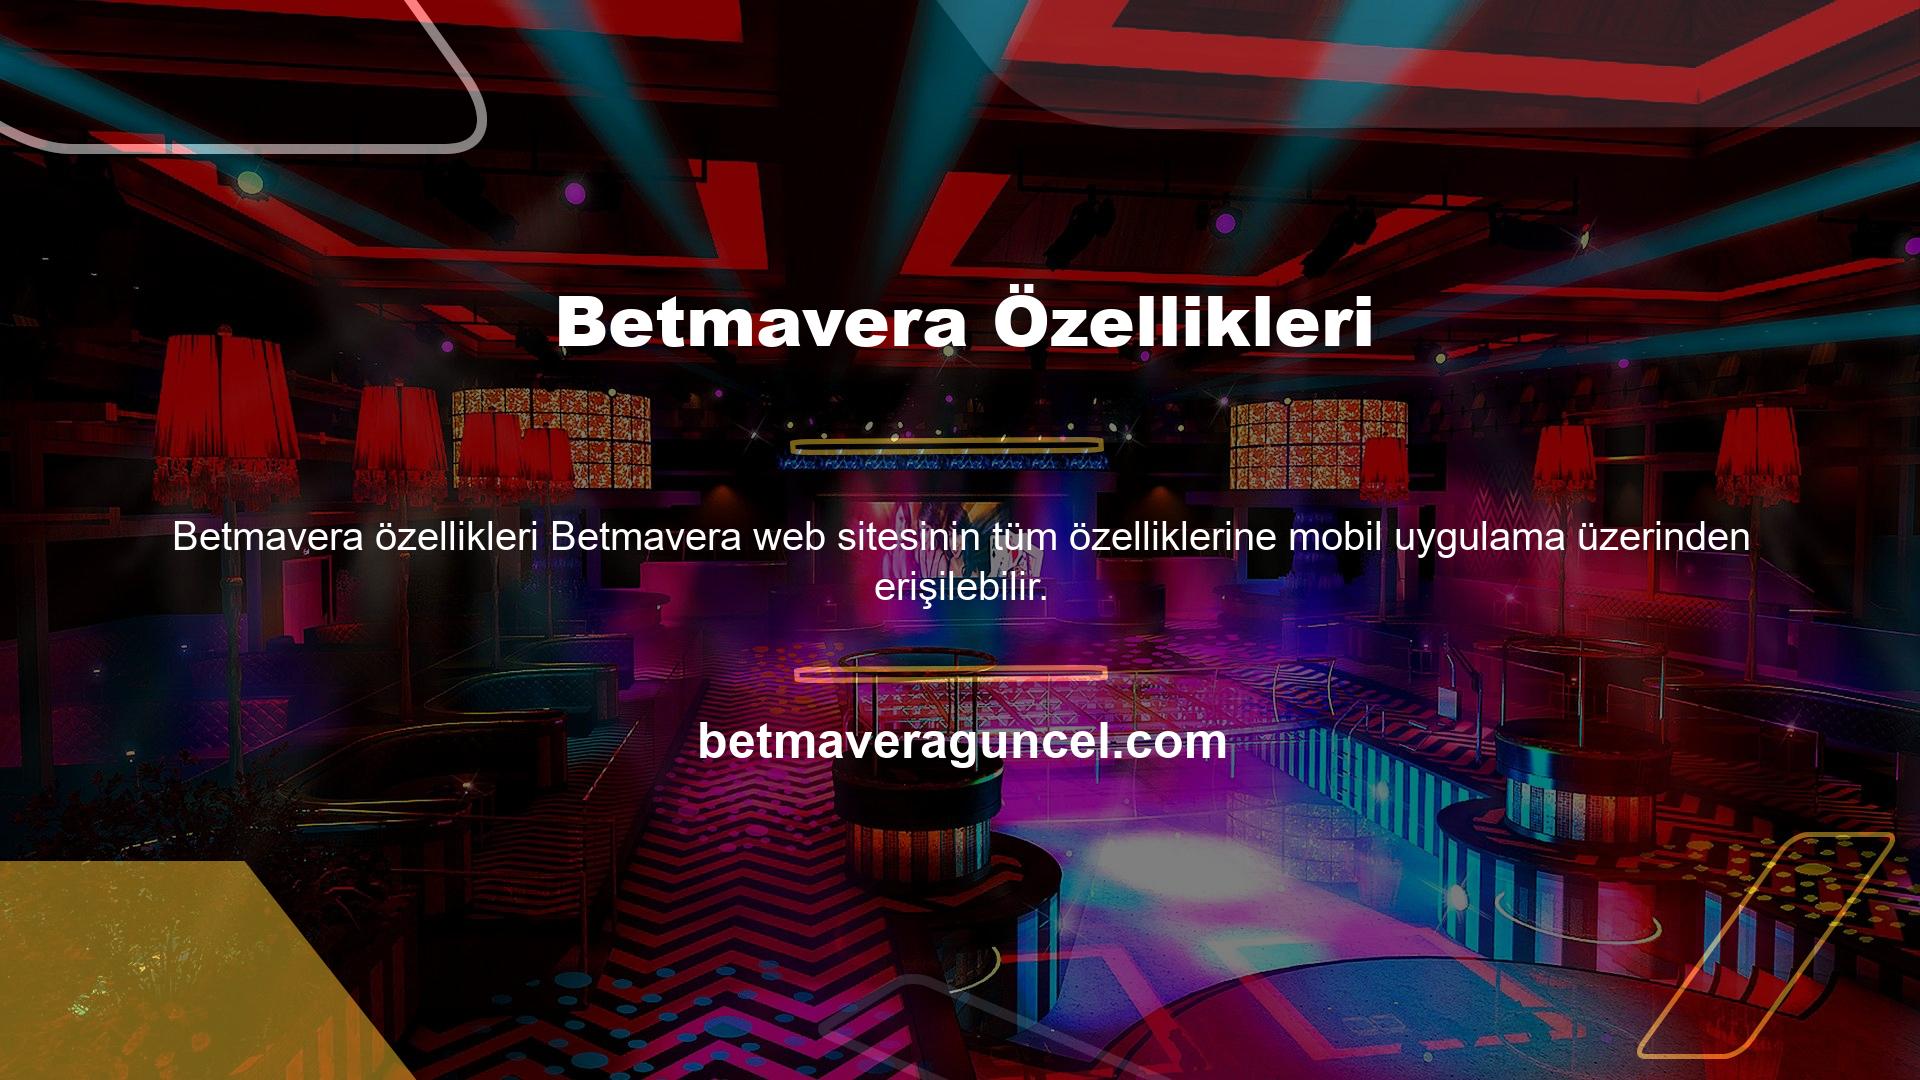 Özellikle Betmavera web sitesinin Betmavera TV özelliklerine mobil uygulamalar üzerinden sürekli erişim sağlanmaktadır